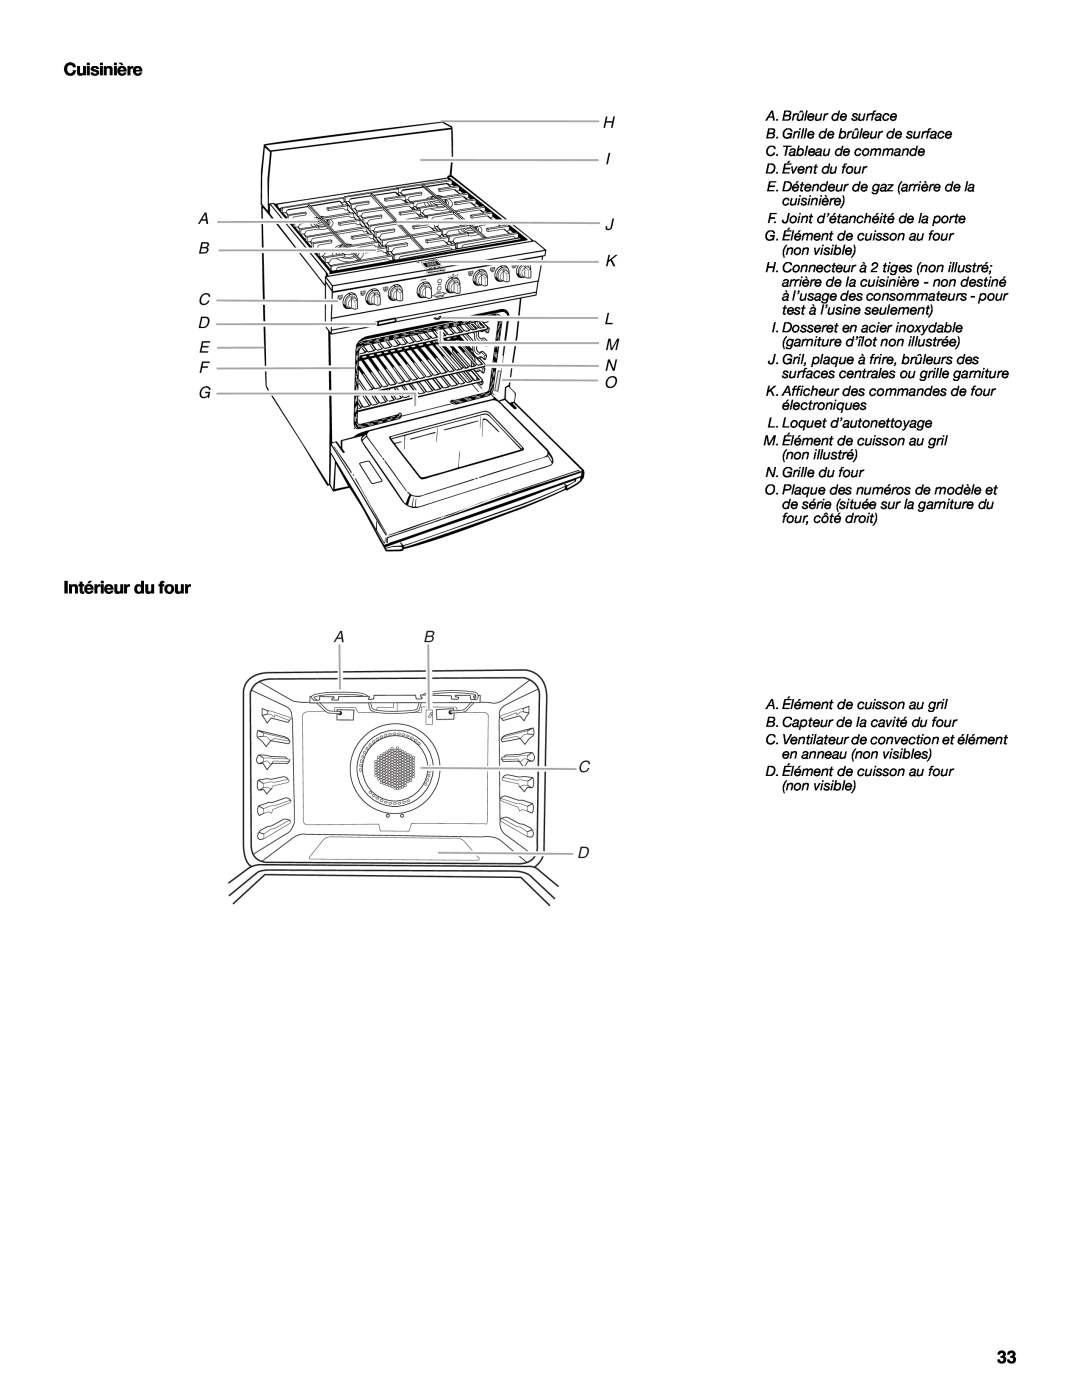 KitchenAid KDRP407 KDRP462 manual Cuisinière, Intérieur du four, Ab C D, A. Brûleur de surface 